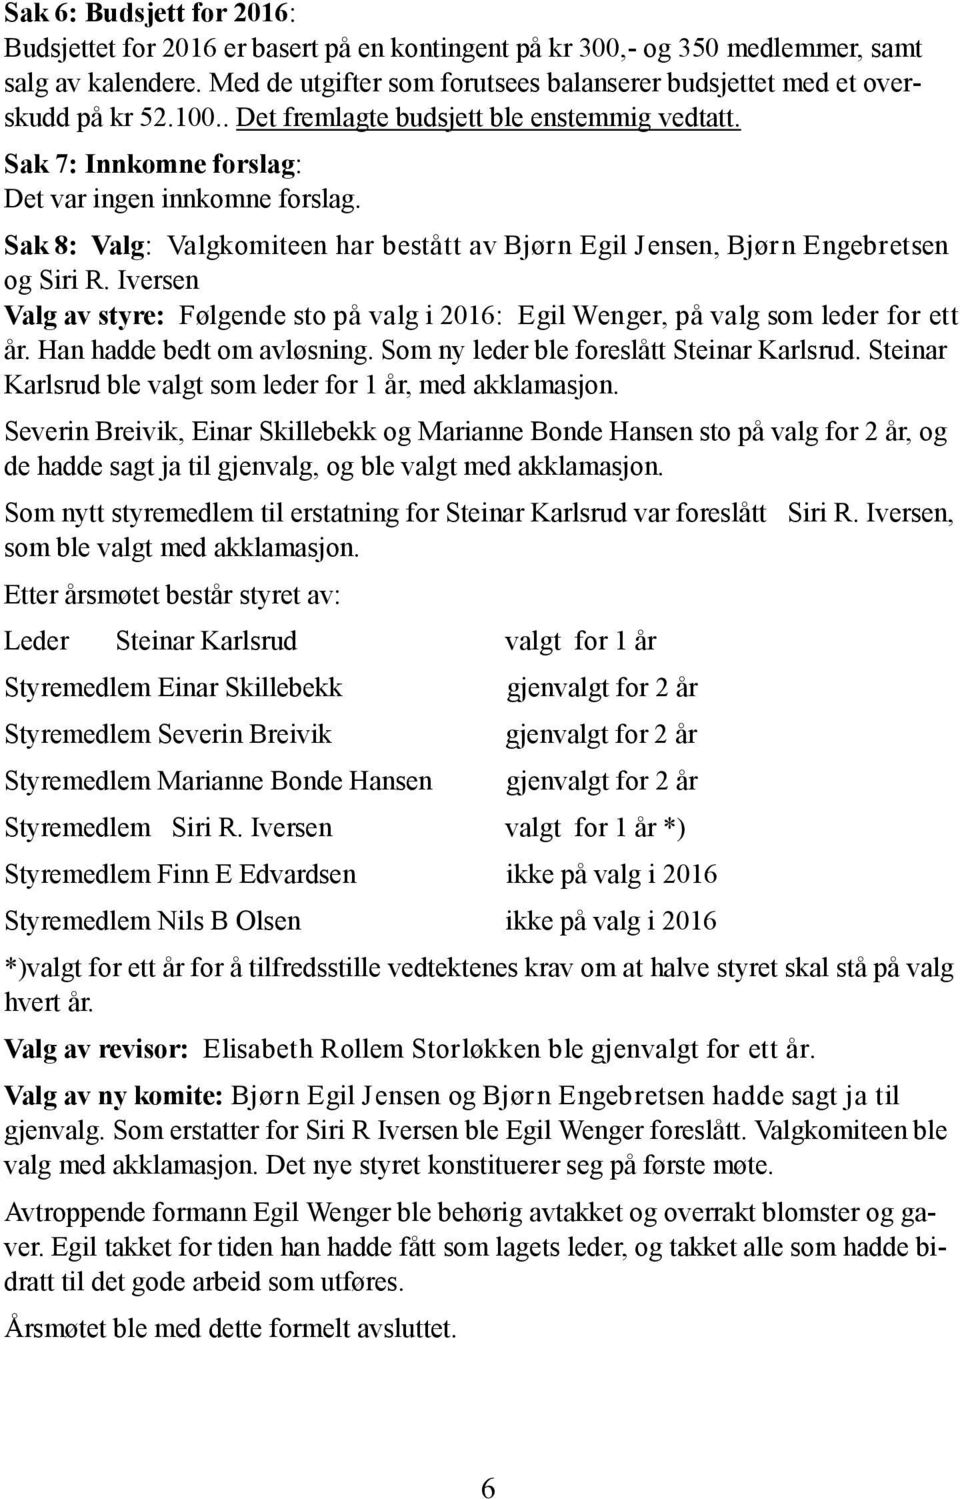 Sak 8: Valg: Valgkomiteen har bestått av Bjørn Egil Jensen, Bjørn Engebretsen og Siri R. Iversen Valg av styre: Følgende sto på valg i 2016: Egil Wenger, på valg som leder for ett år.